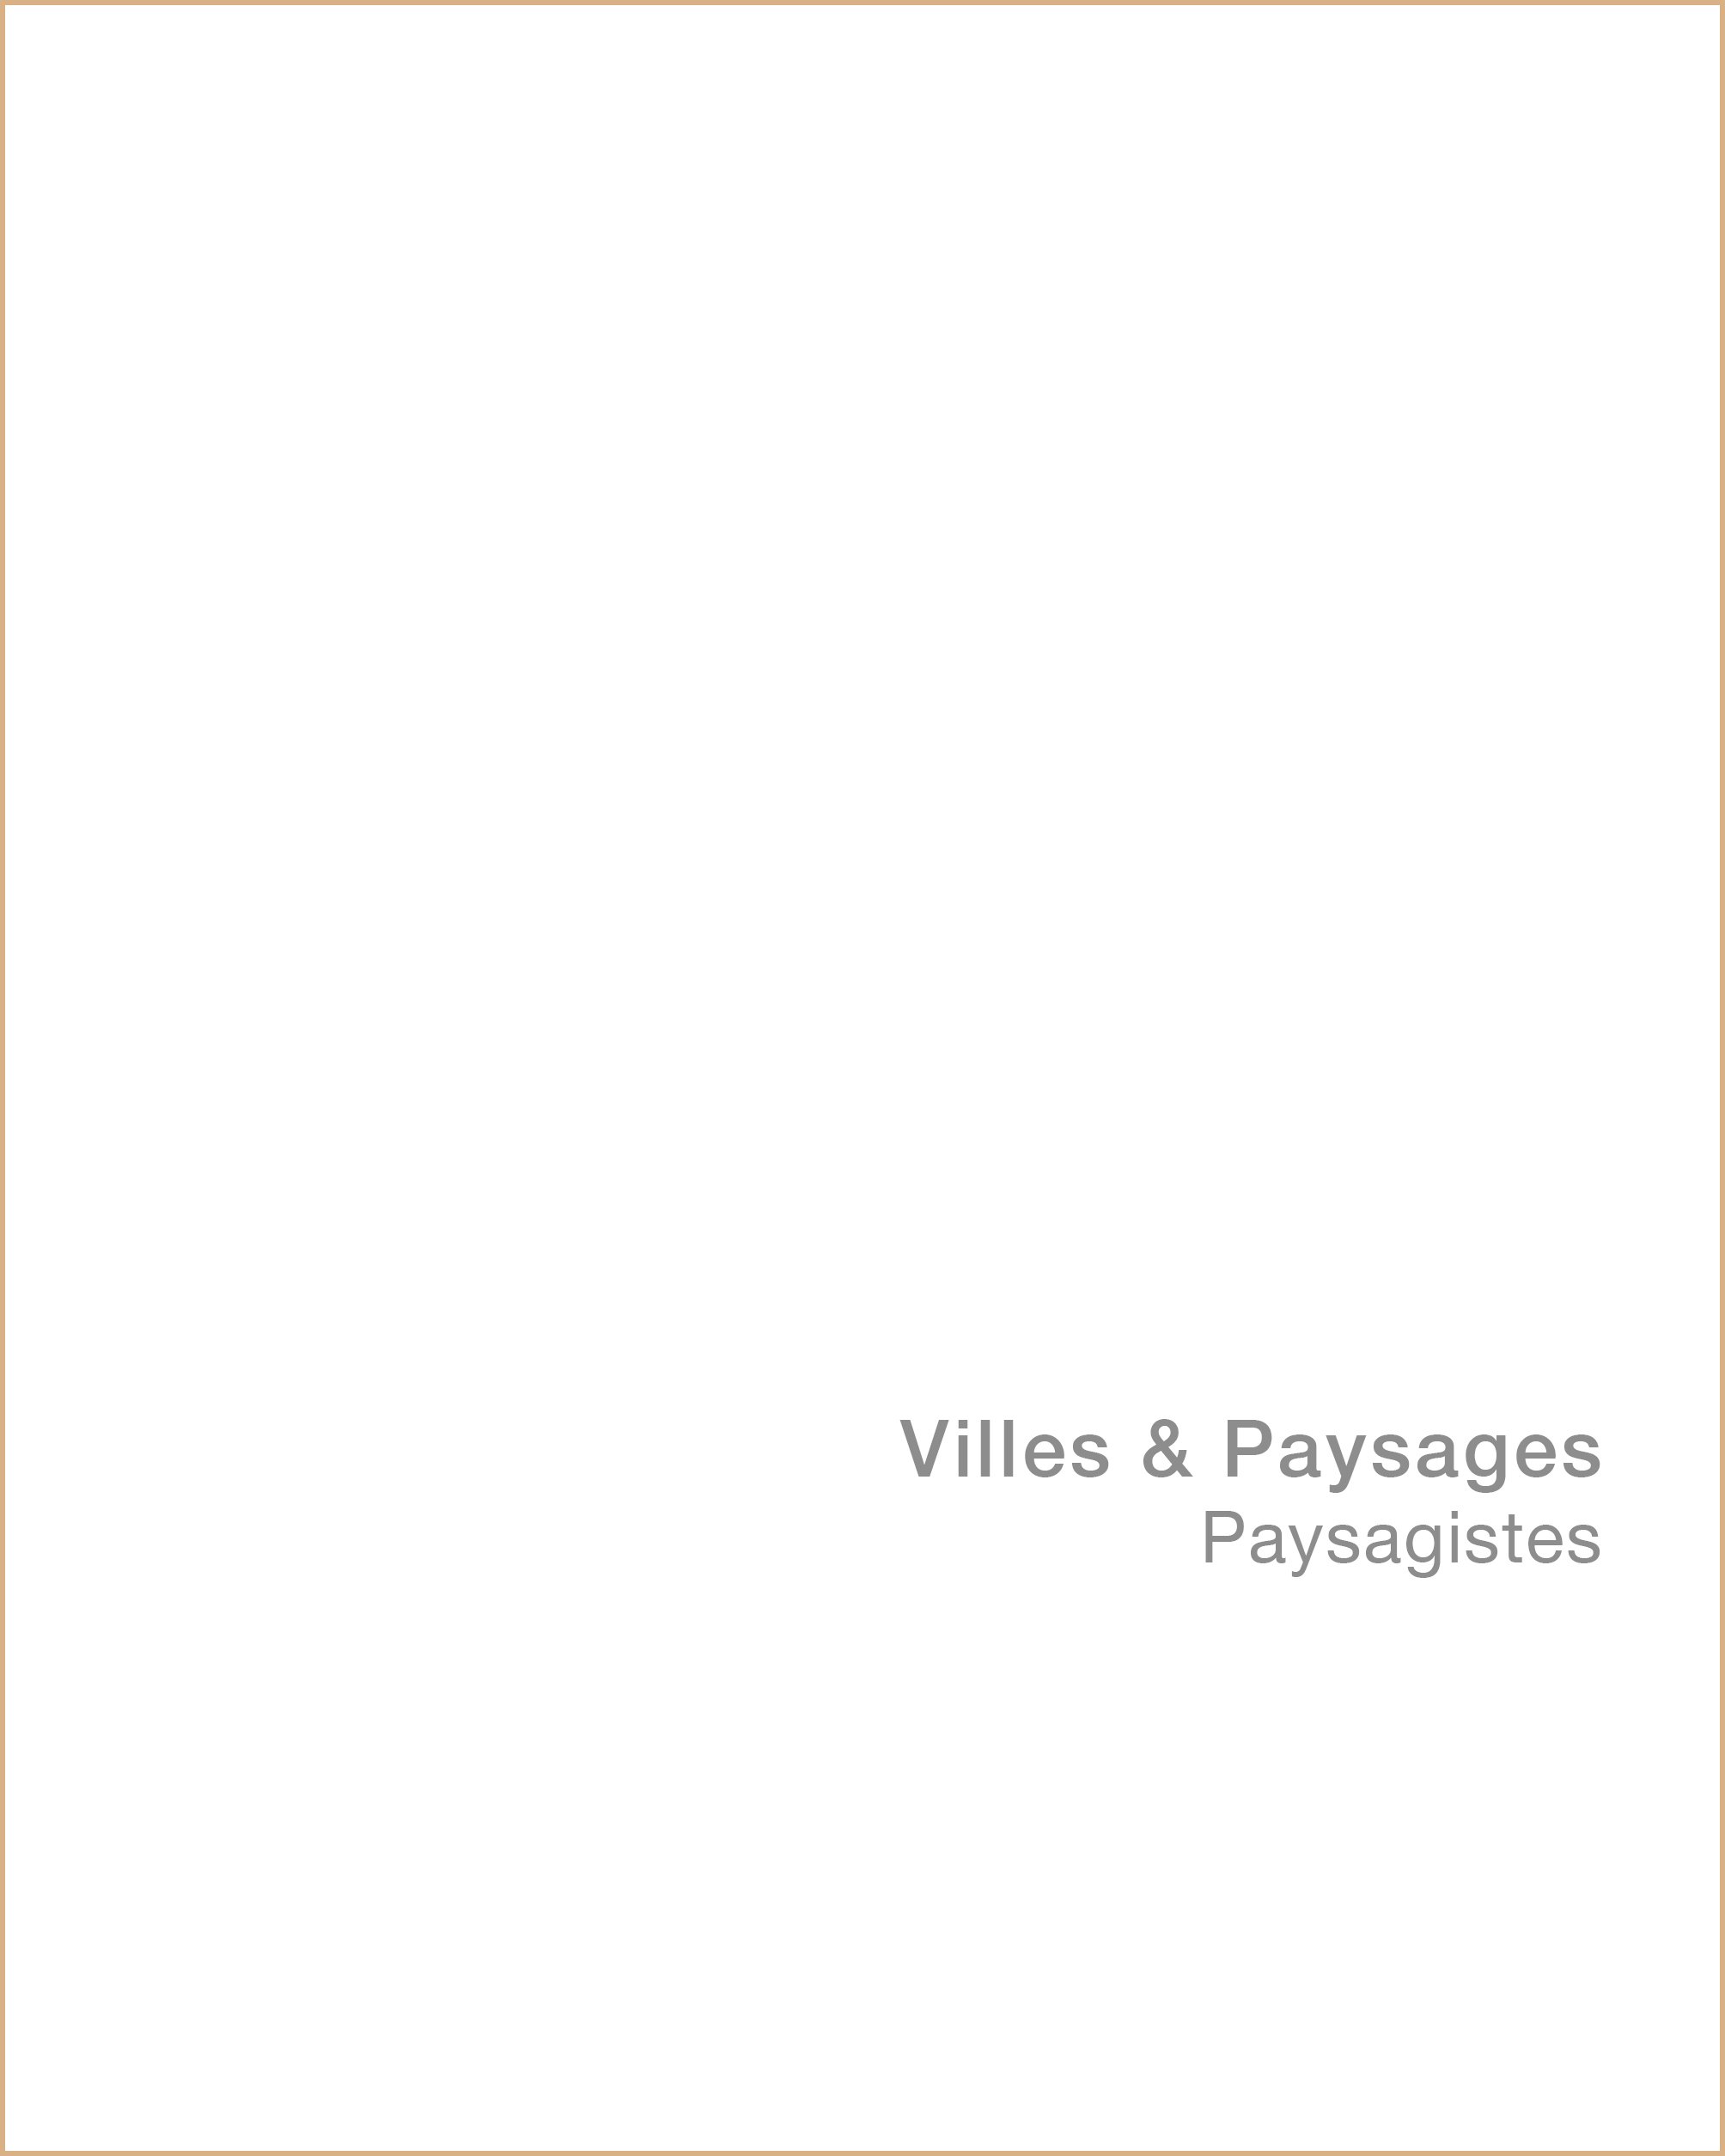 ViilesPaysages.jpg